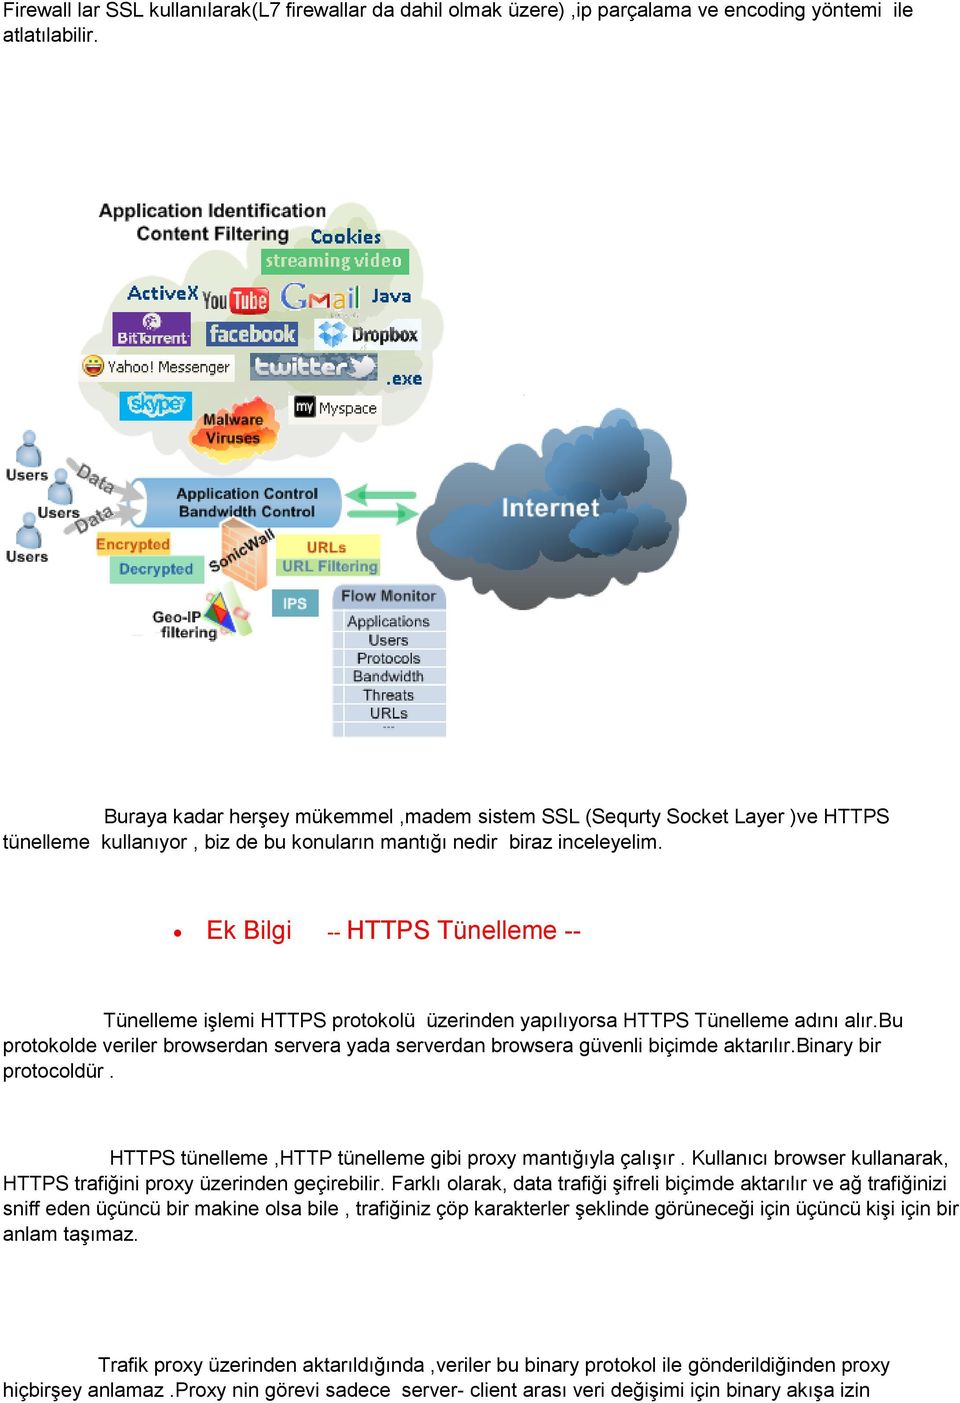 Ek Bilgi -- HTTPS Tünelleme -- Tünelleme işlemi HTTPS protokolü üzerinden yapılıyorsa HTTPS Tünelleme adını alır.